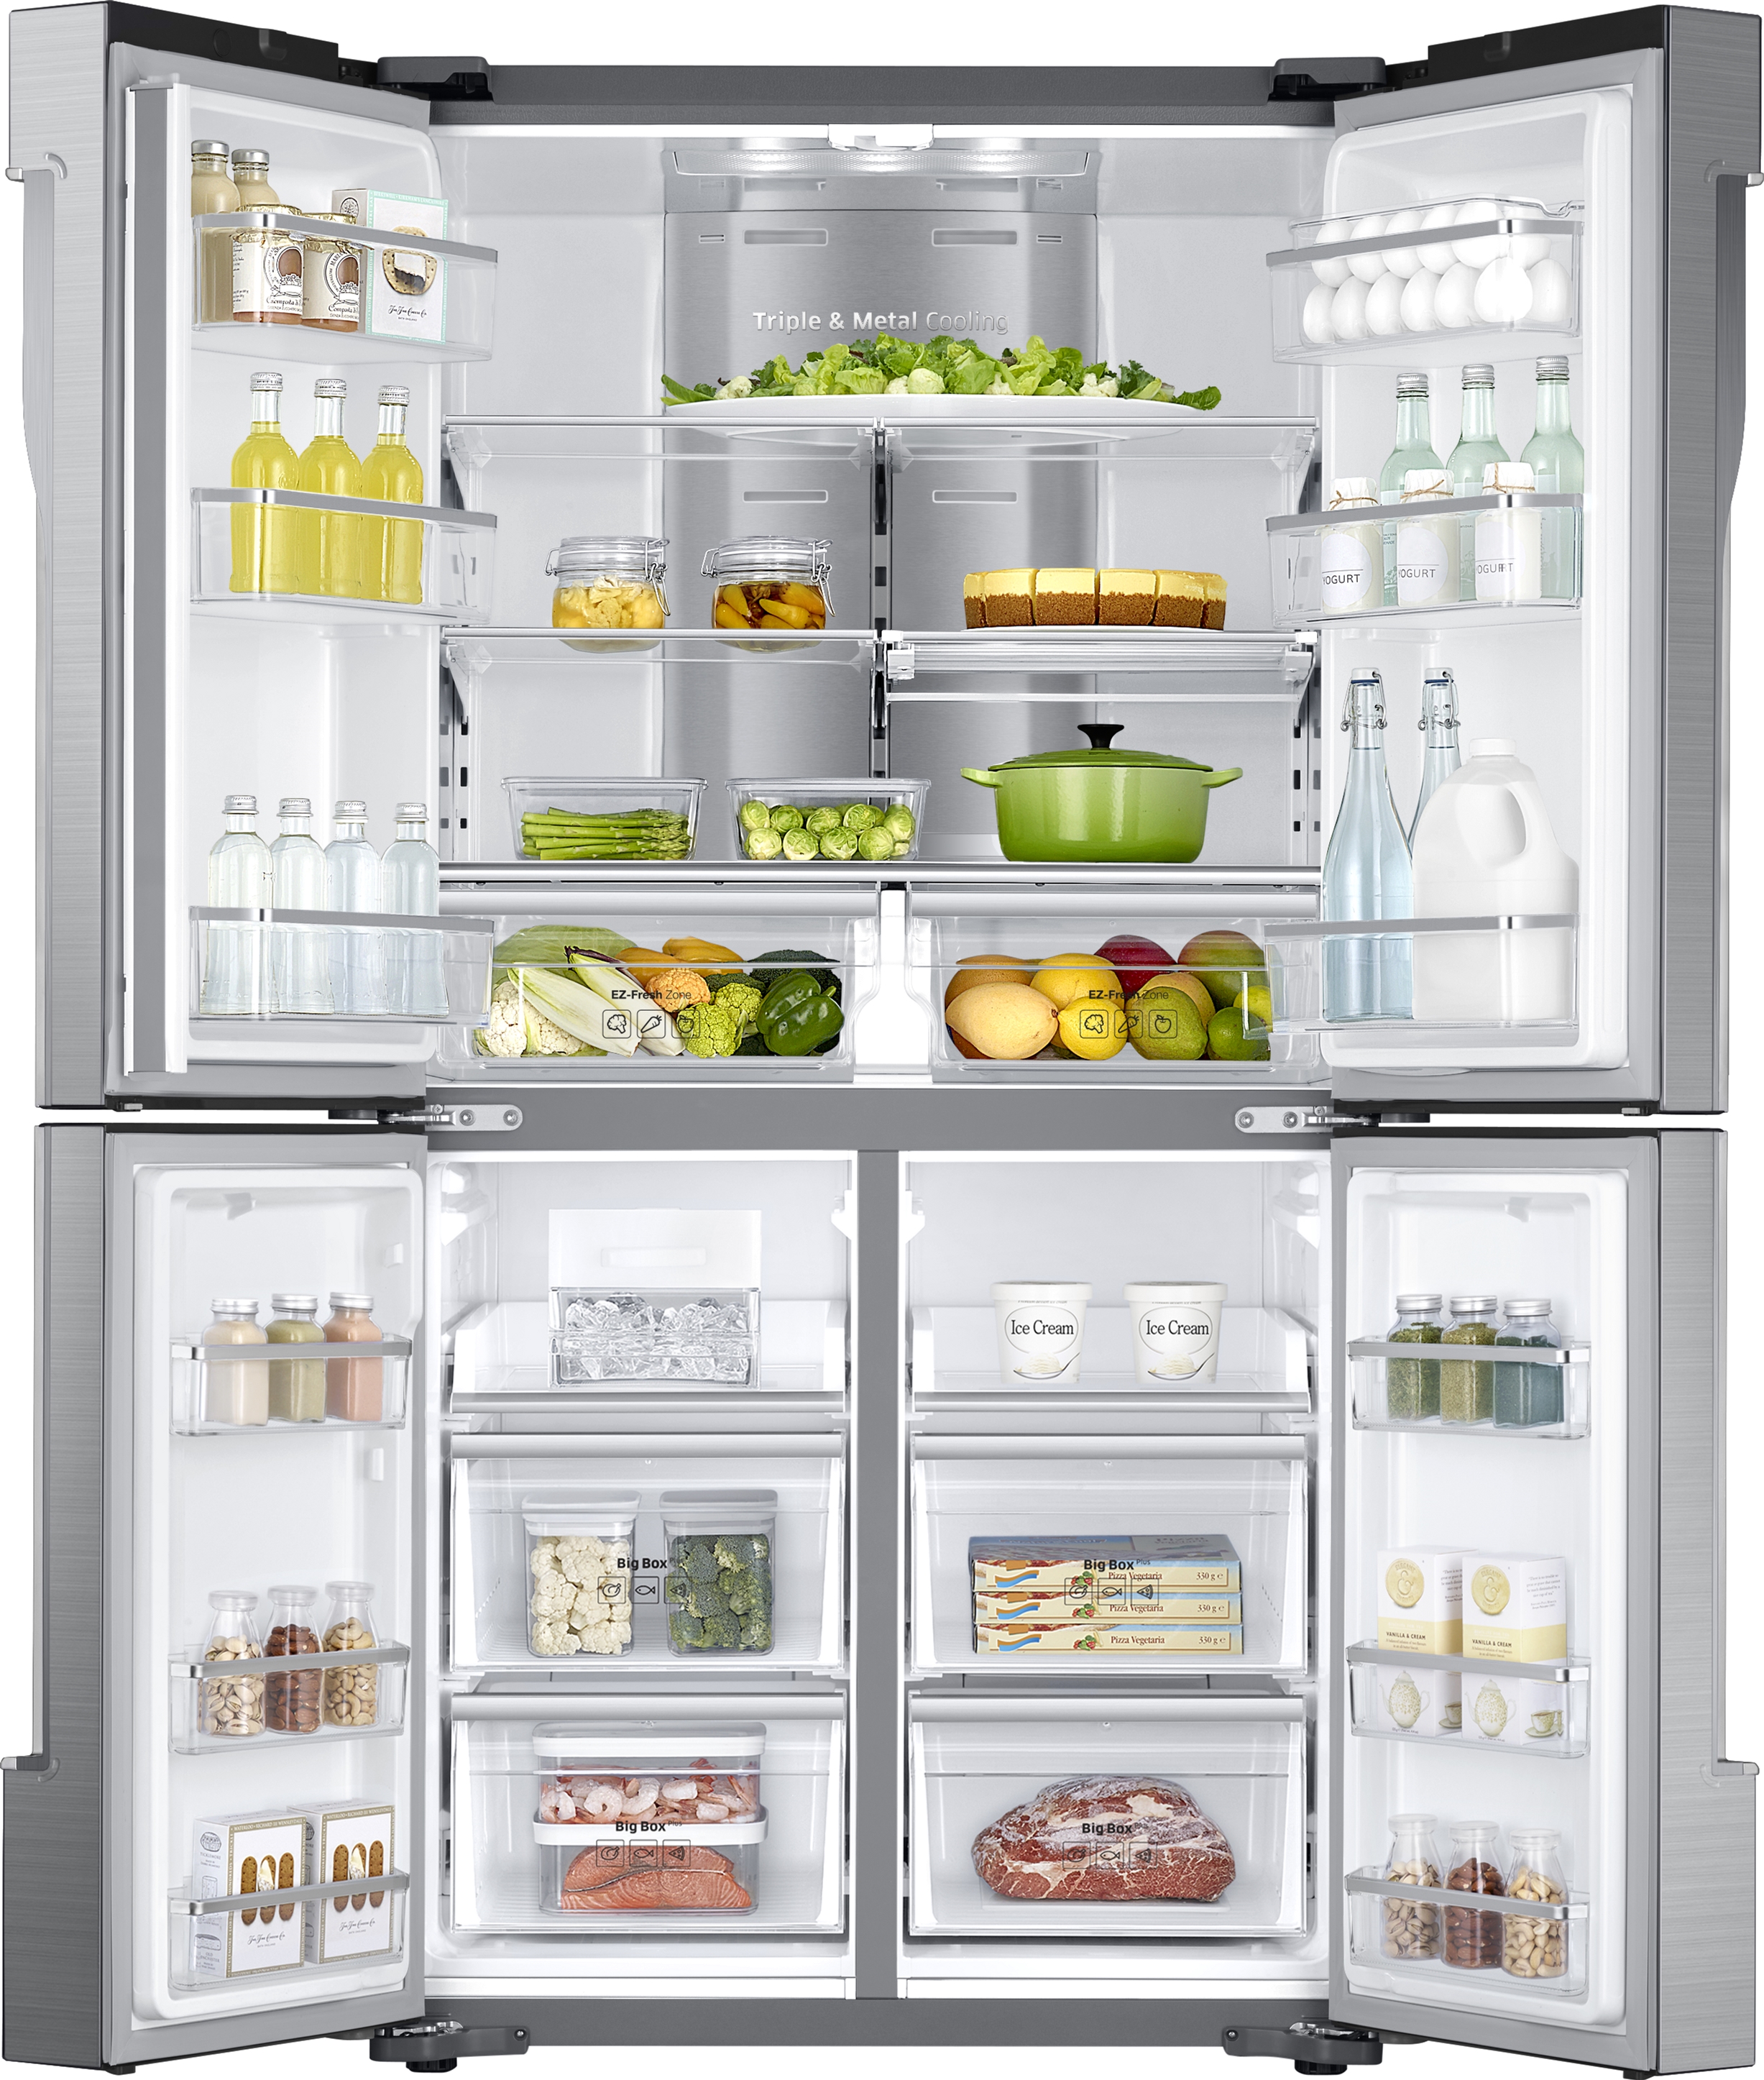 Морозилка снизу. Холодильник многодверный Samsung rf61k90407f. Холодильник Samsung RF-56 j9041sr. Samsung RF-61 k90407f. Холодильник Samsung RF-61 k90407f.